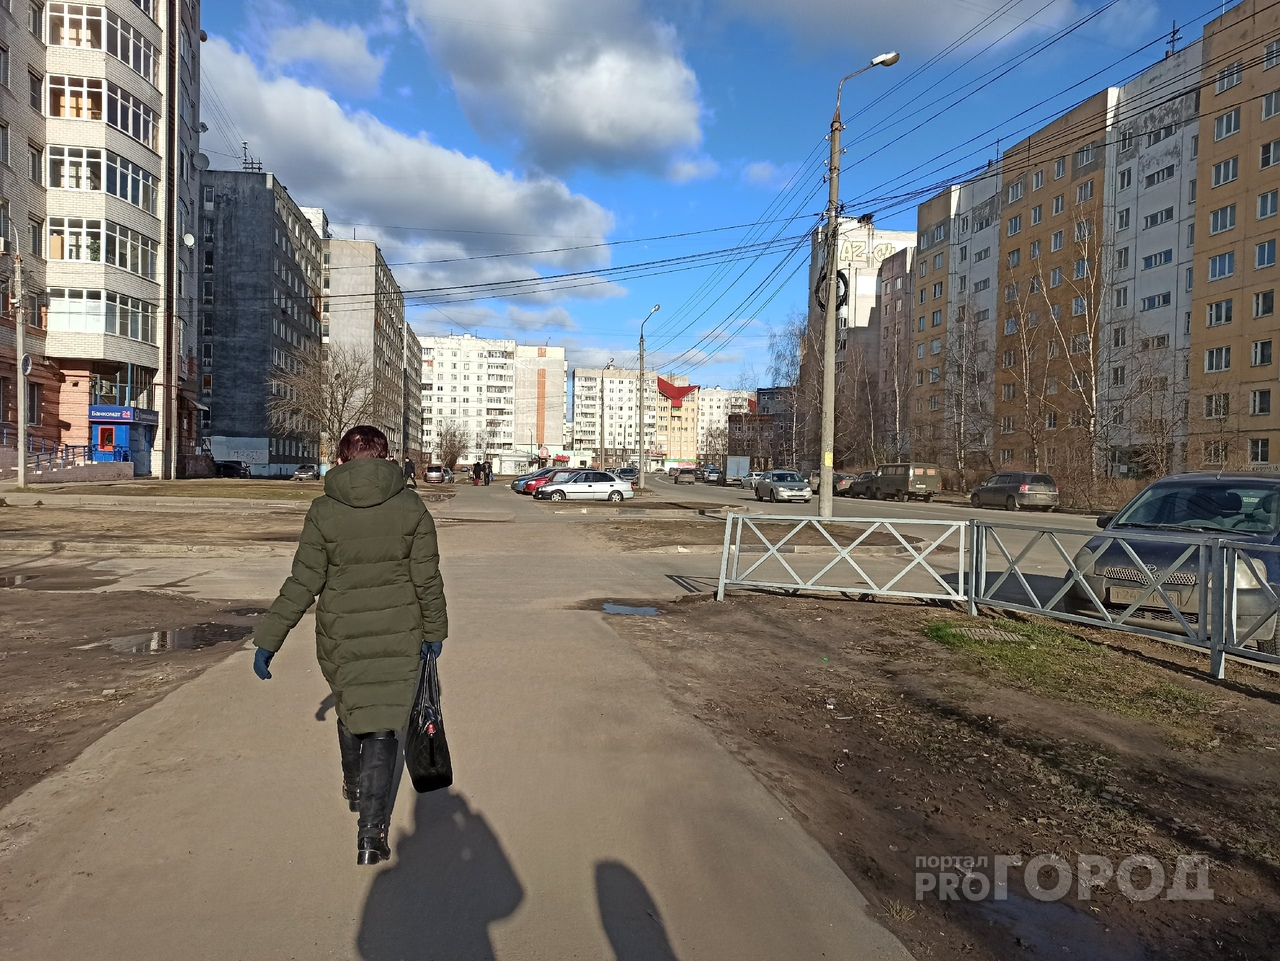 Холода обрушились на Ярославль: синоптики удивили прогнозом погоды на март